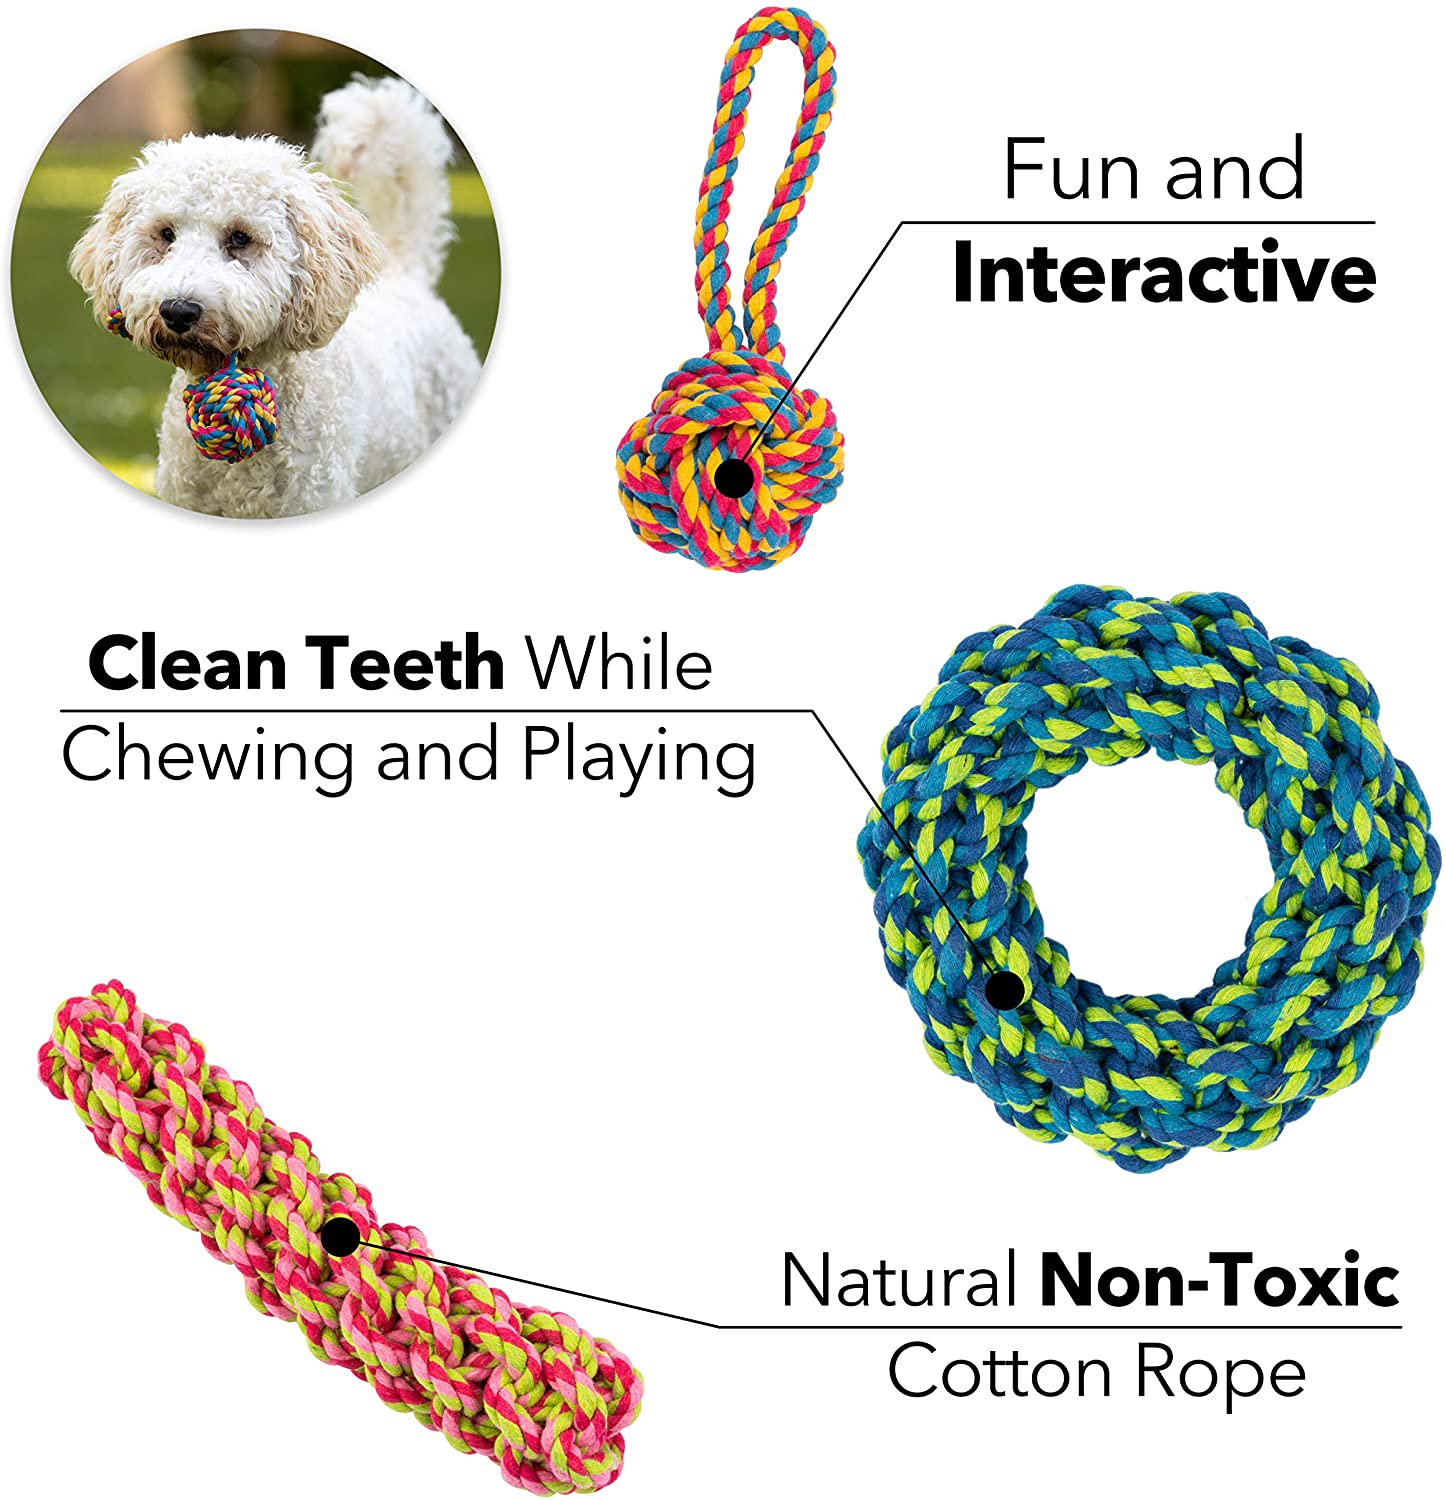  Juguetes de cuerda para perro, juego de 10 diferentes juguetes para perros grandes y pequeños 